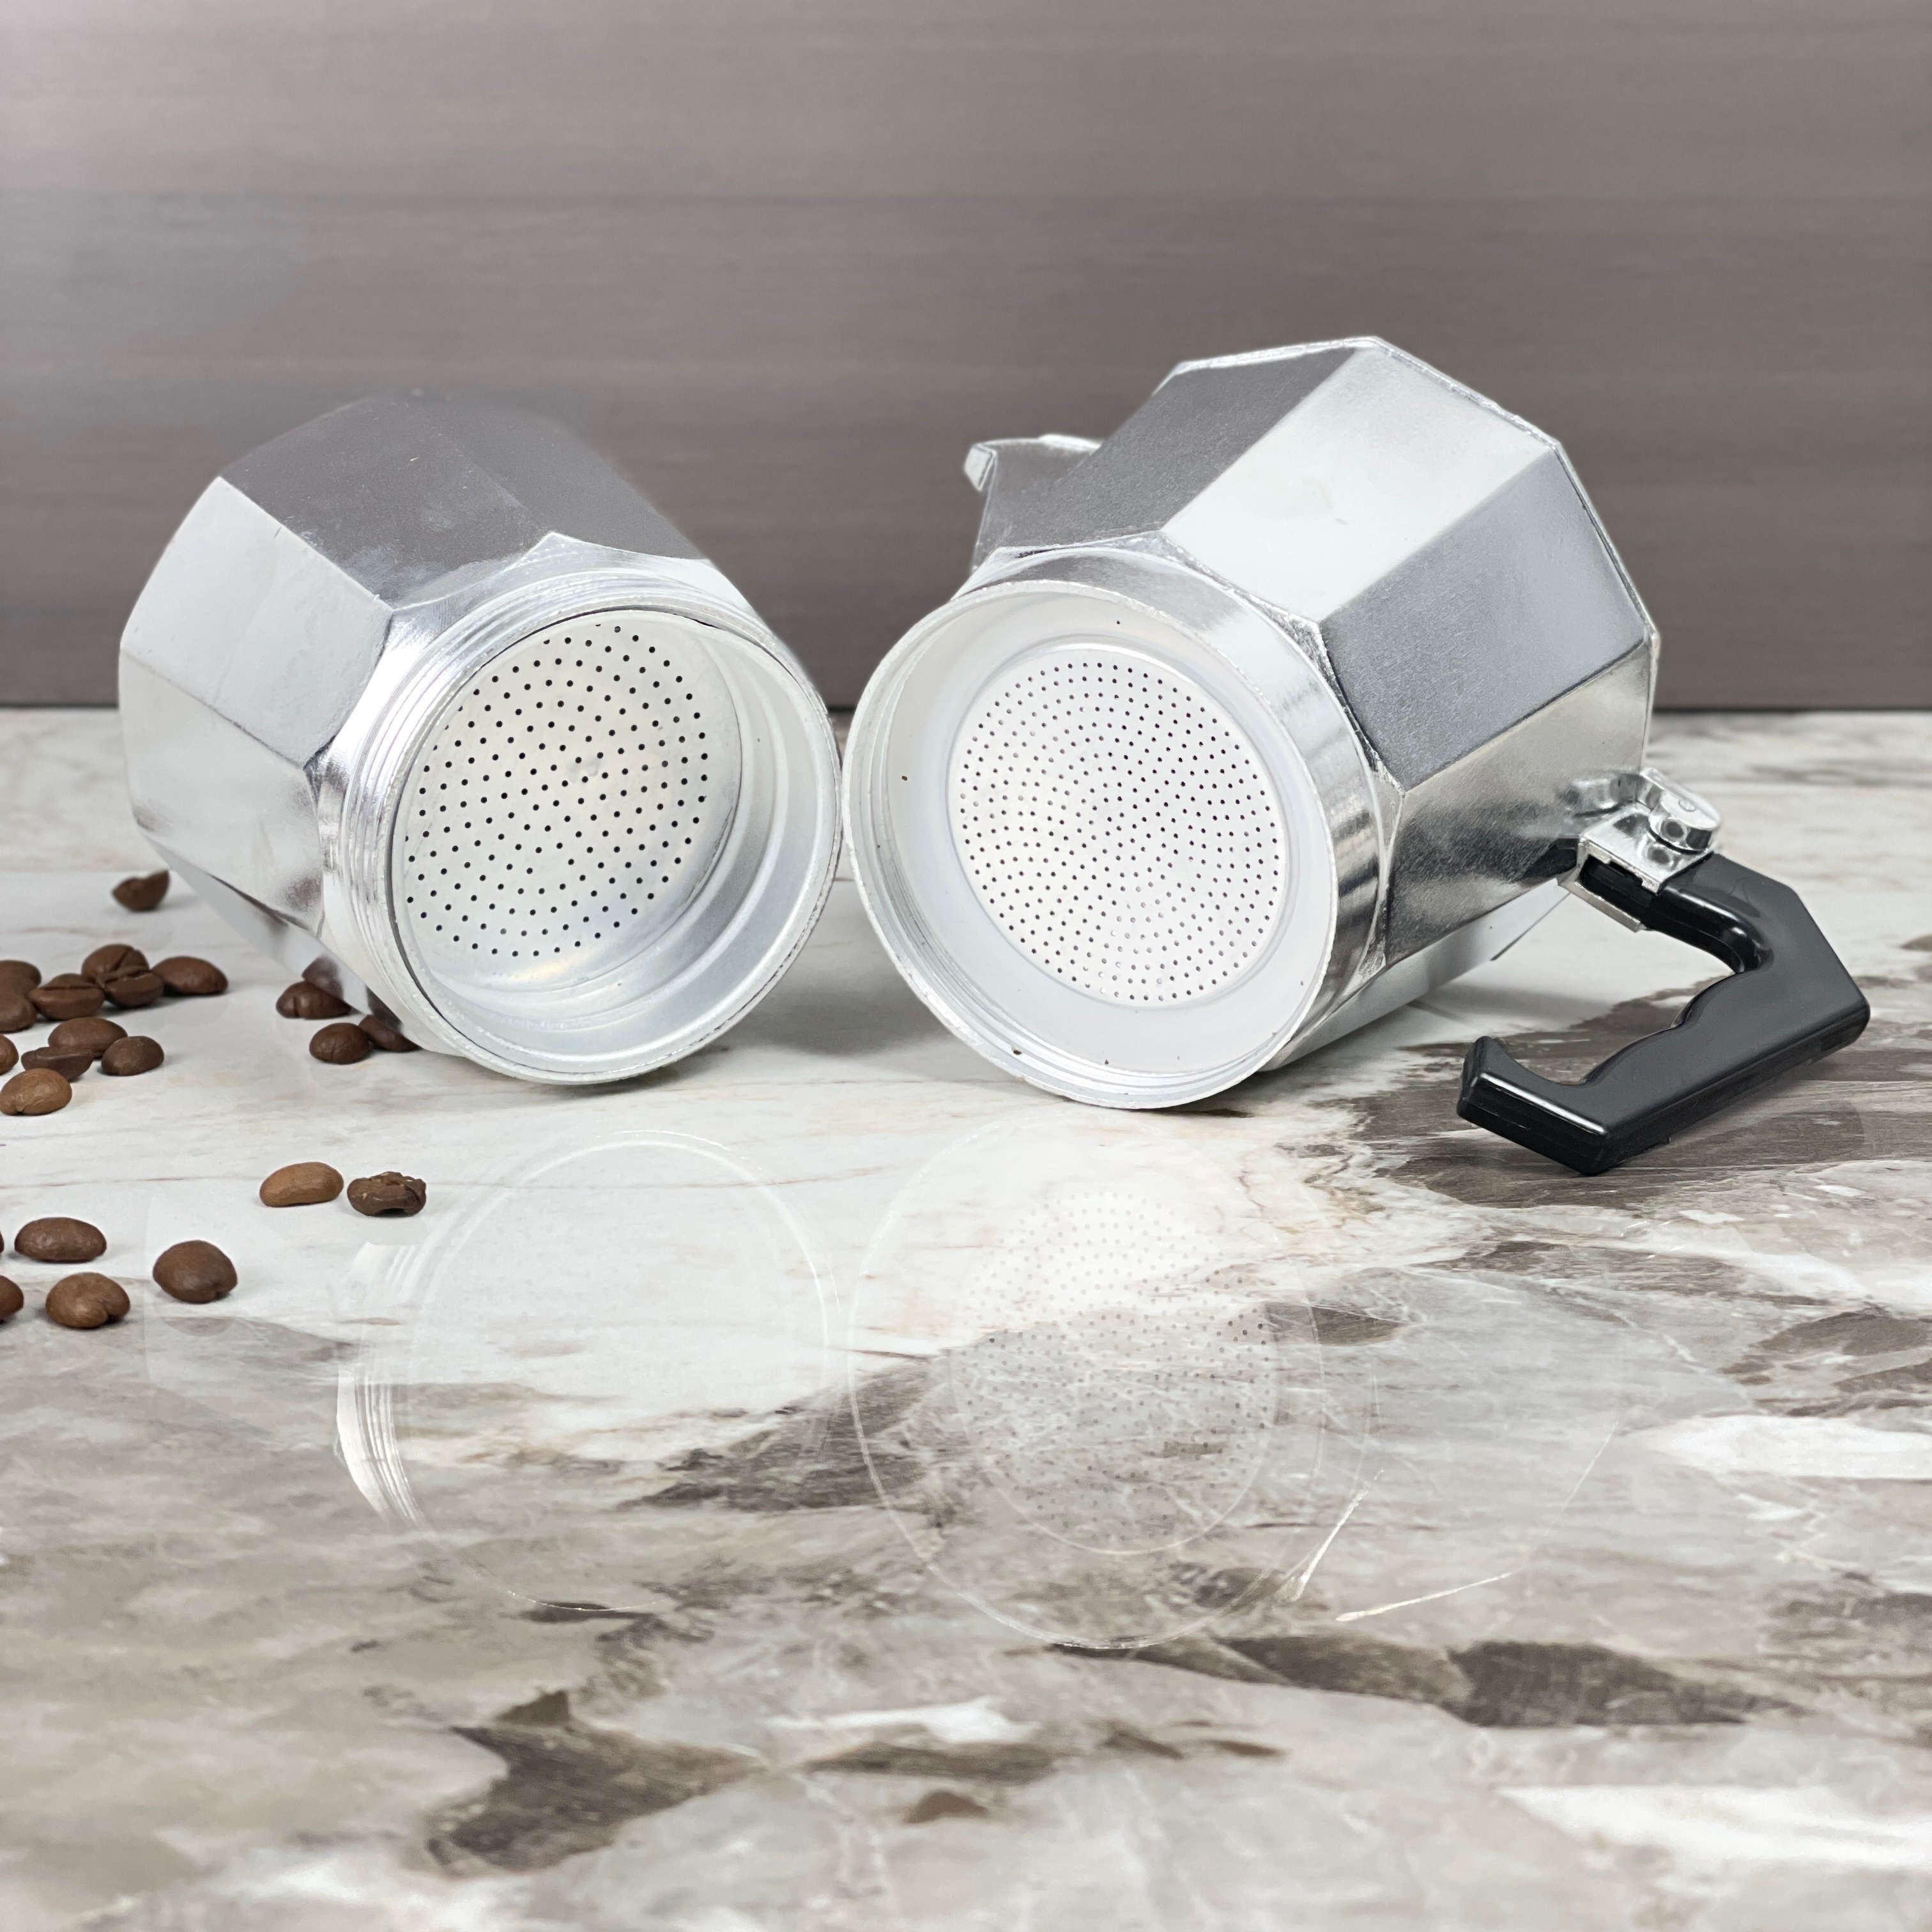 Bialetti Aluminum Coffee Moka Pot Espresso Percolator Stove Coffee